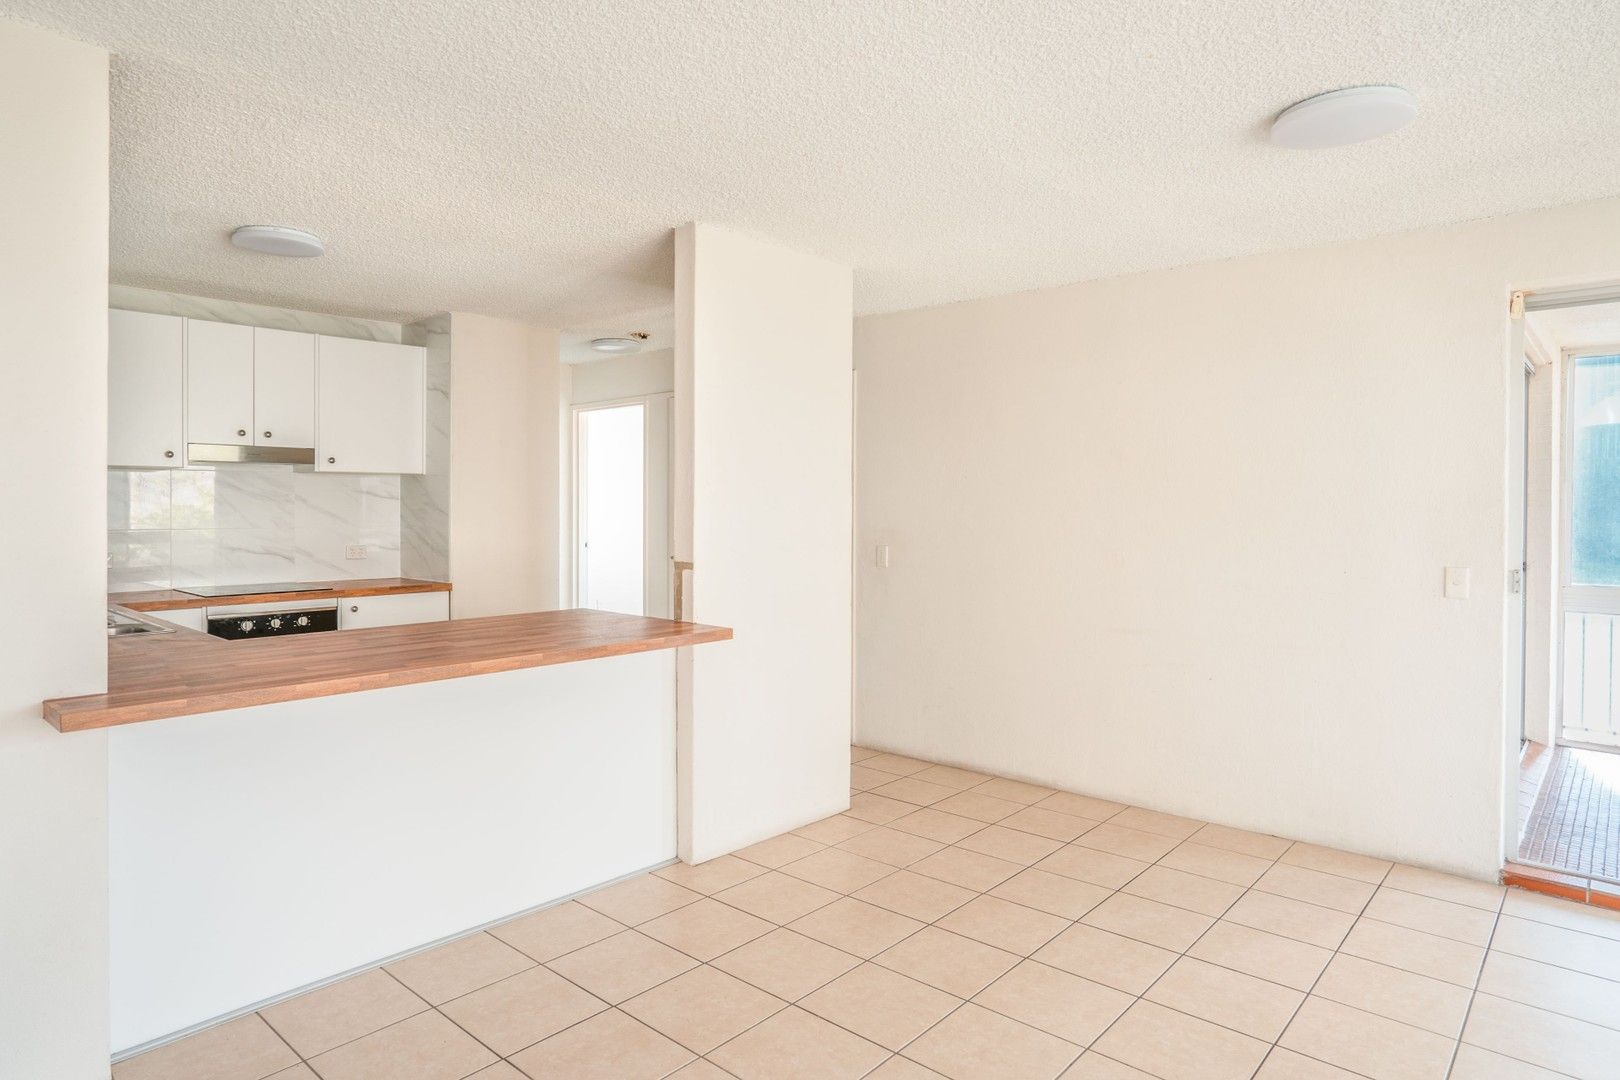 2 bedrooms Apartment / Unit / Flat in 3/16 Dingle Avenue CALOUNDRA QLD, 4551